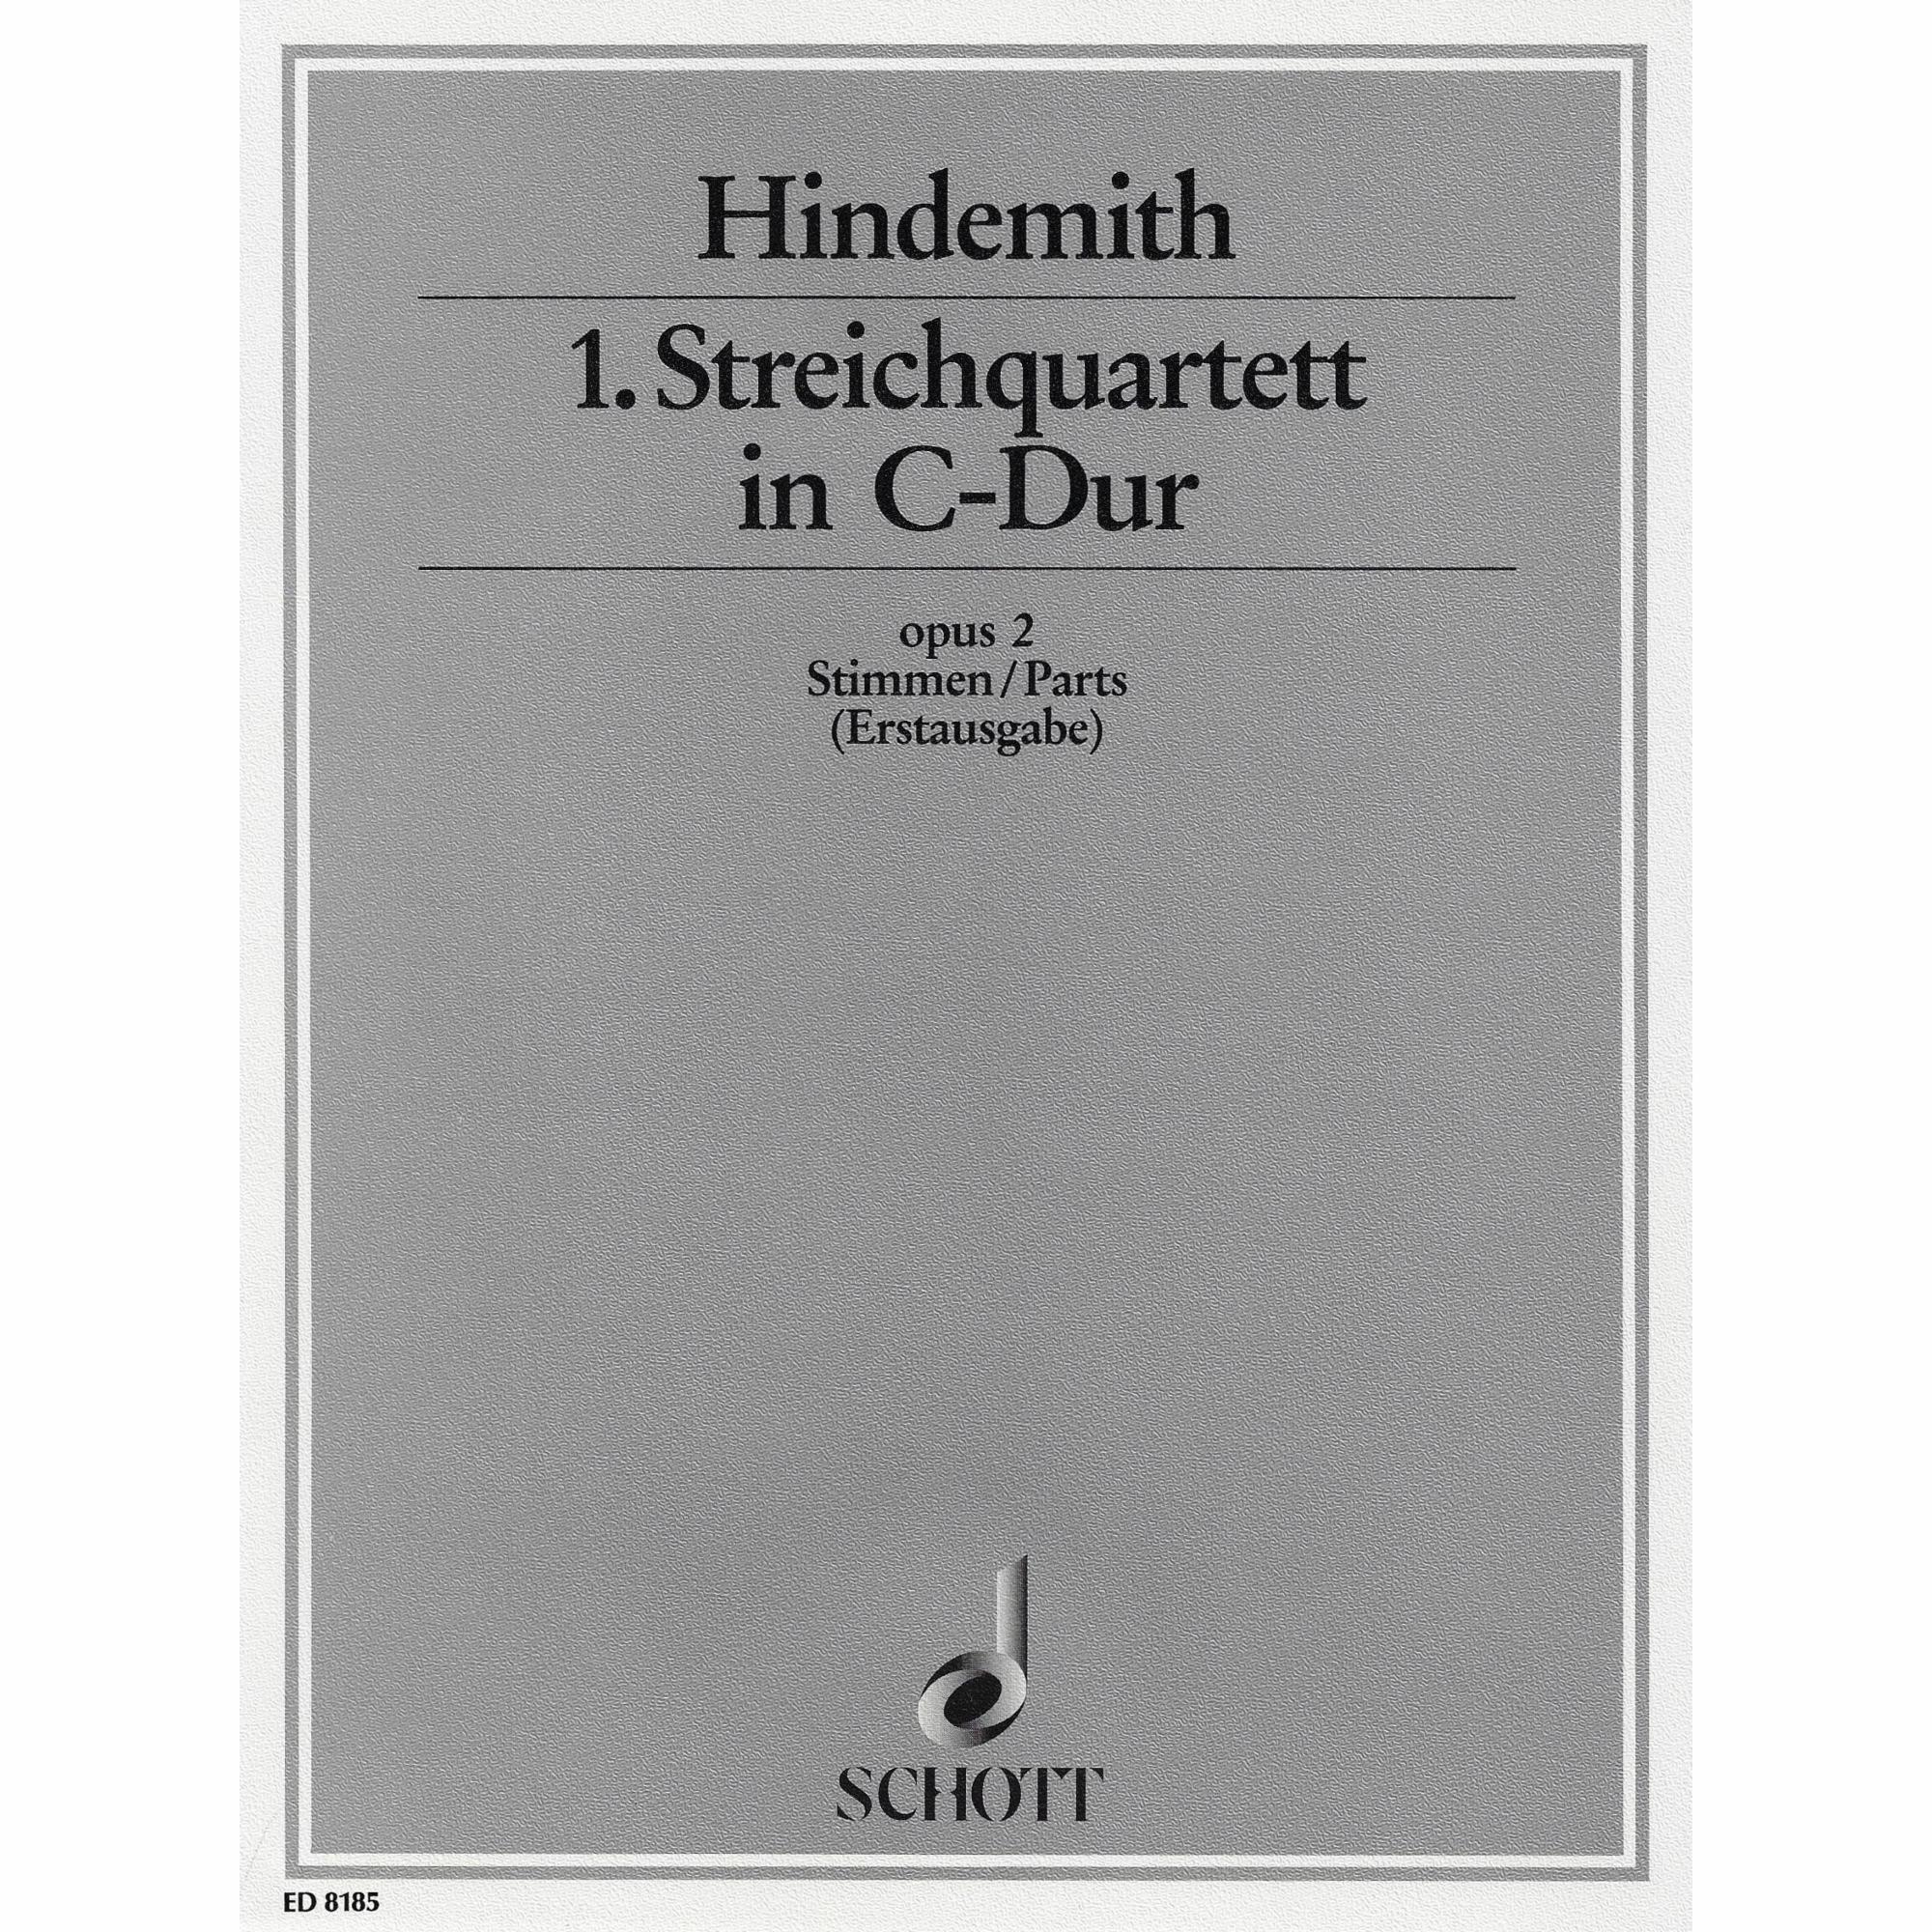 Hindemith -- String Quartet No. 1 in C Major, Op. 2